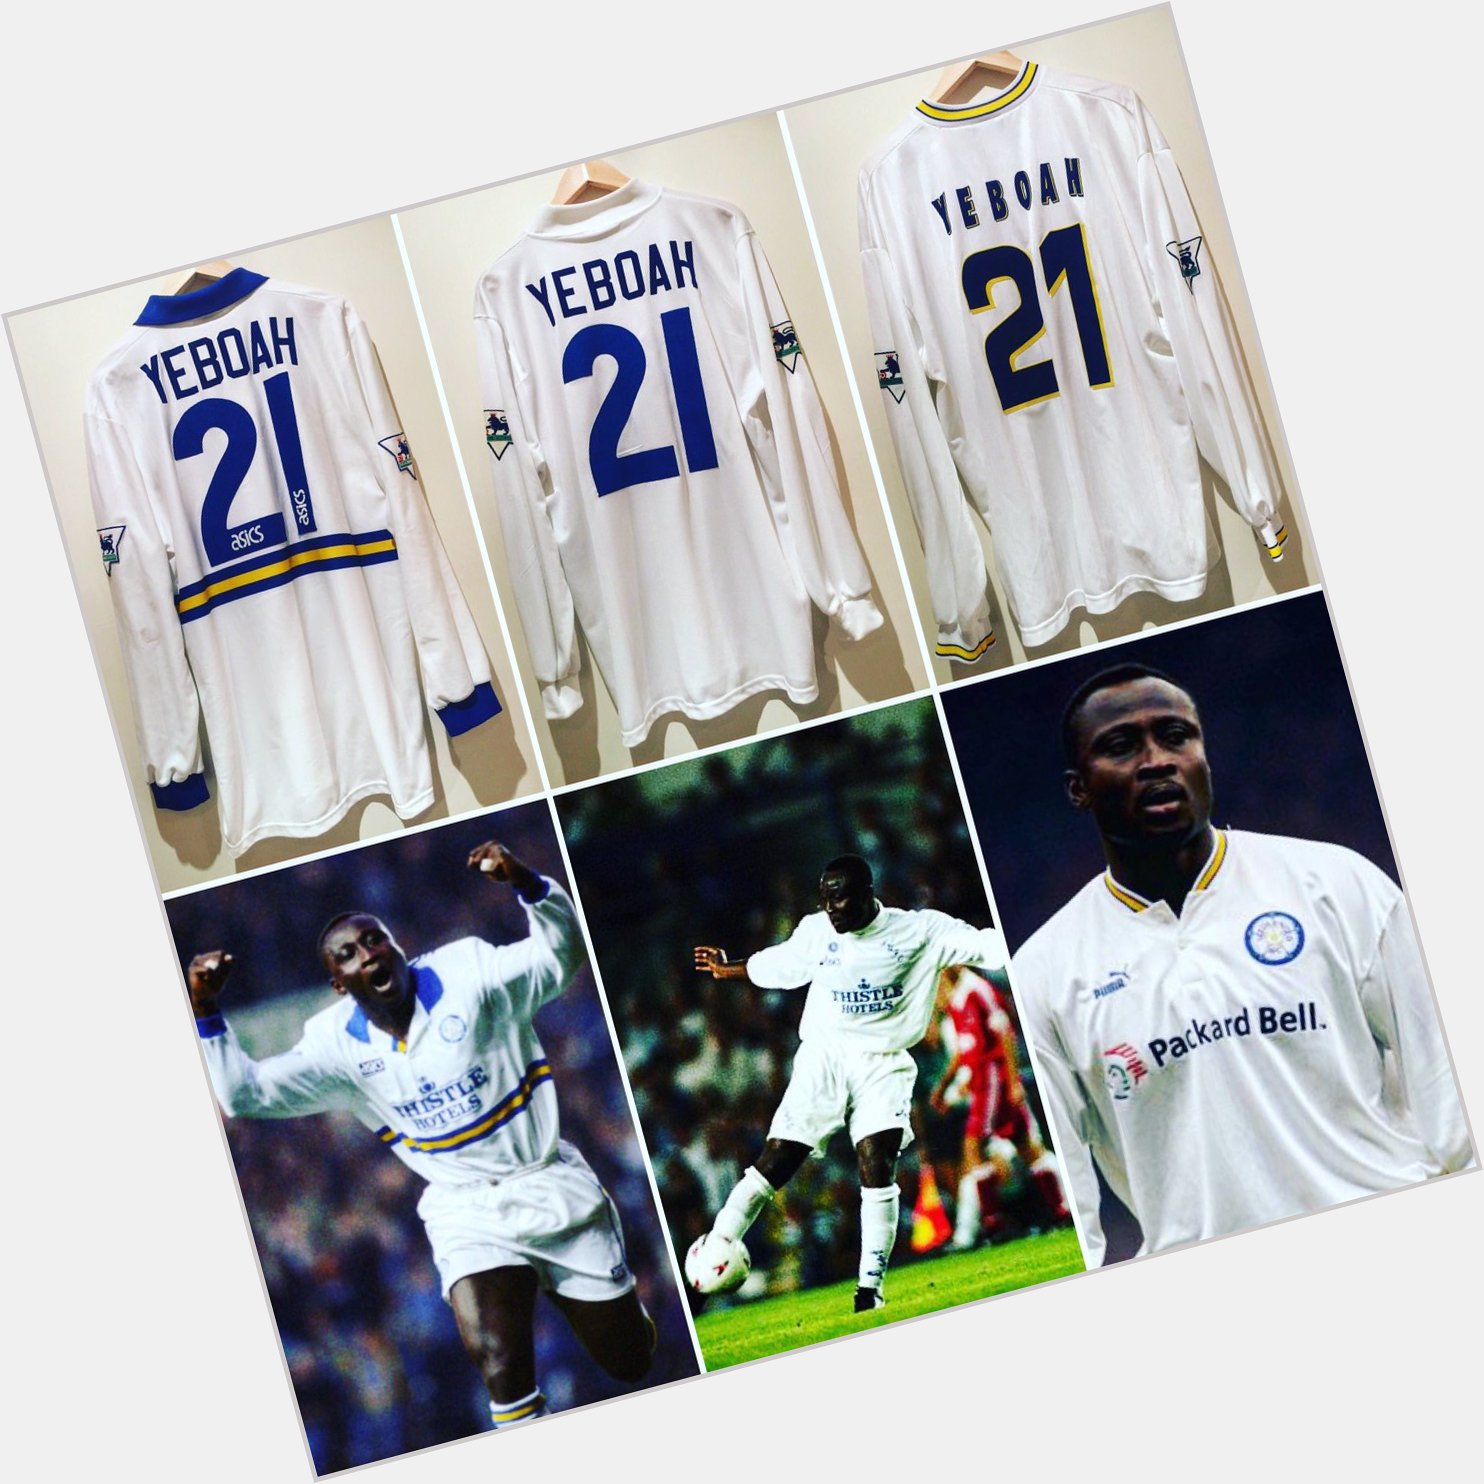 Happy Birthday Tony Yeboah! Here are three of his matchworn shirts...  